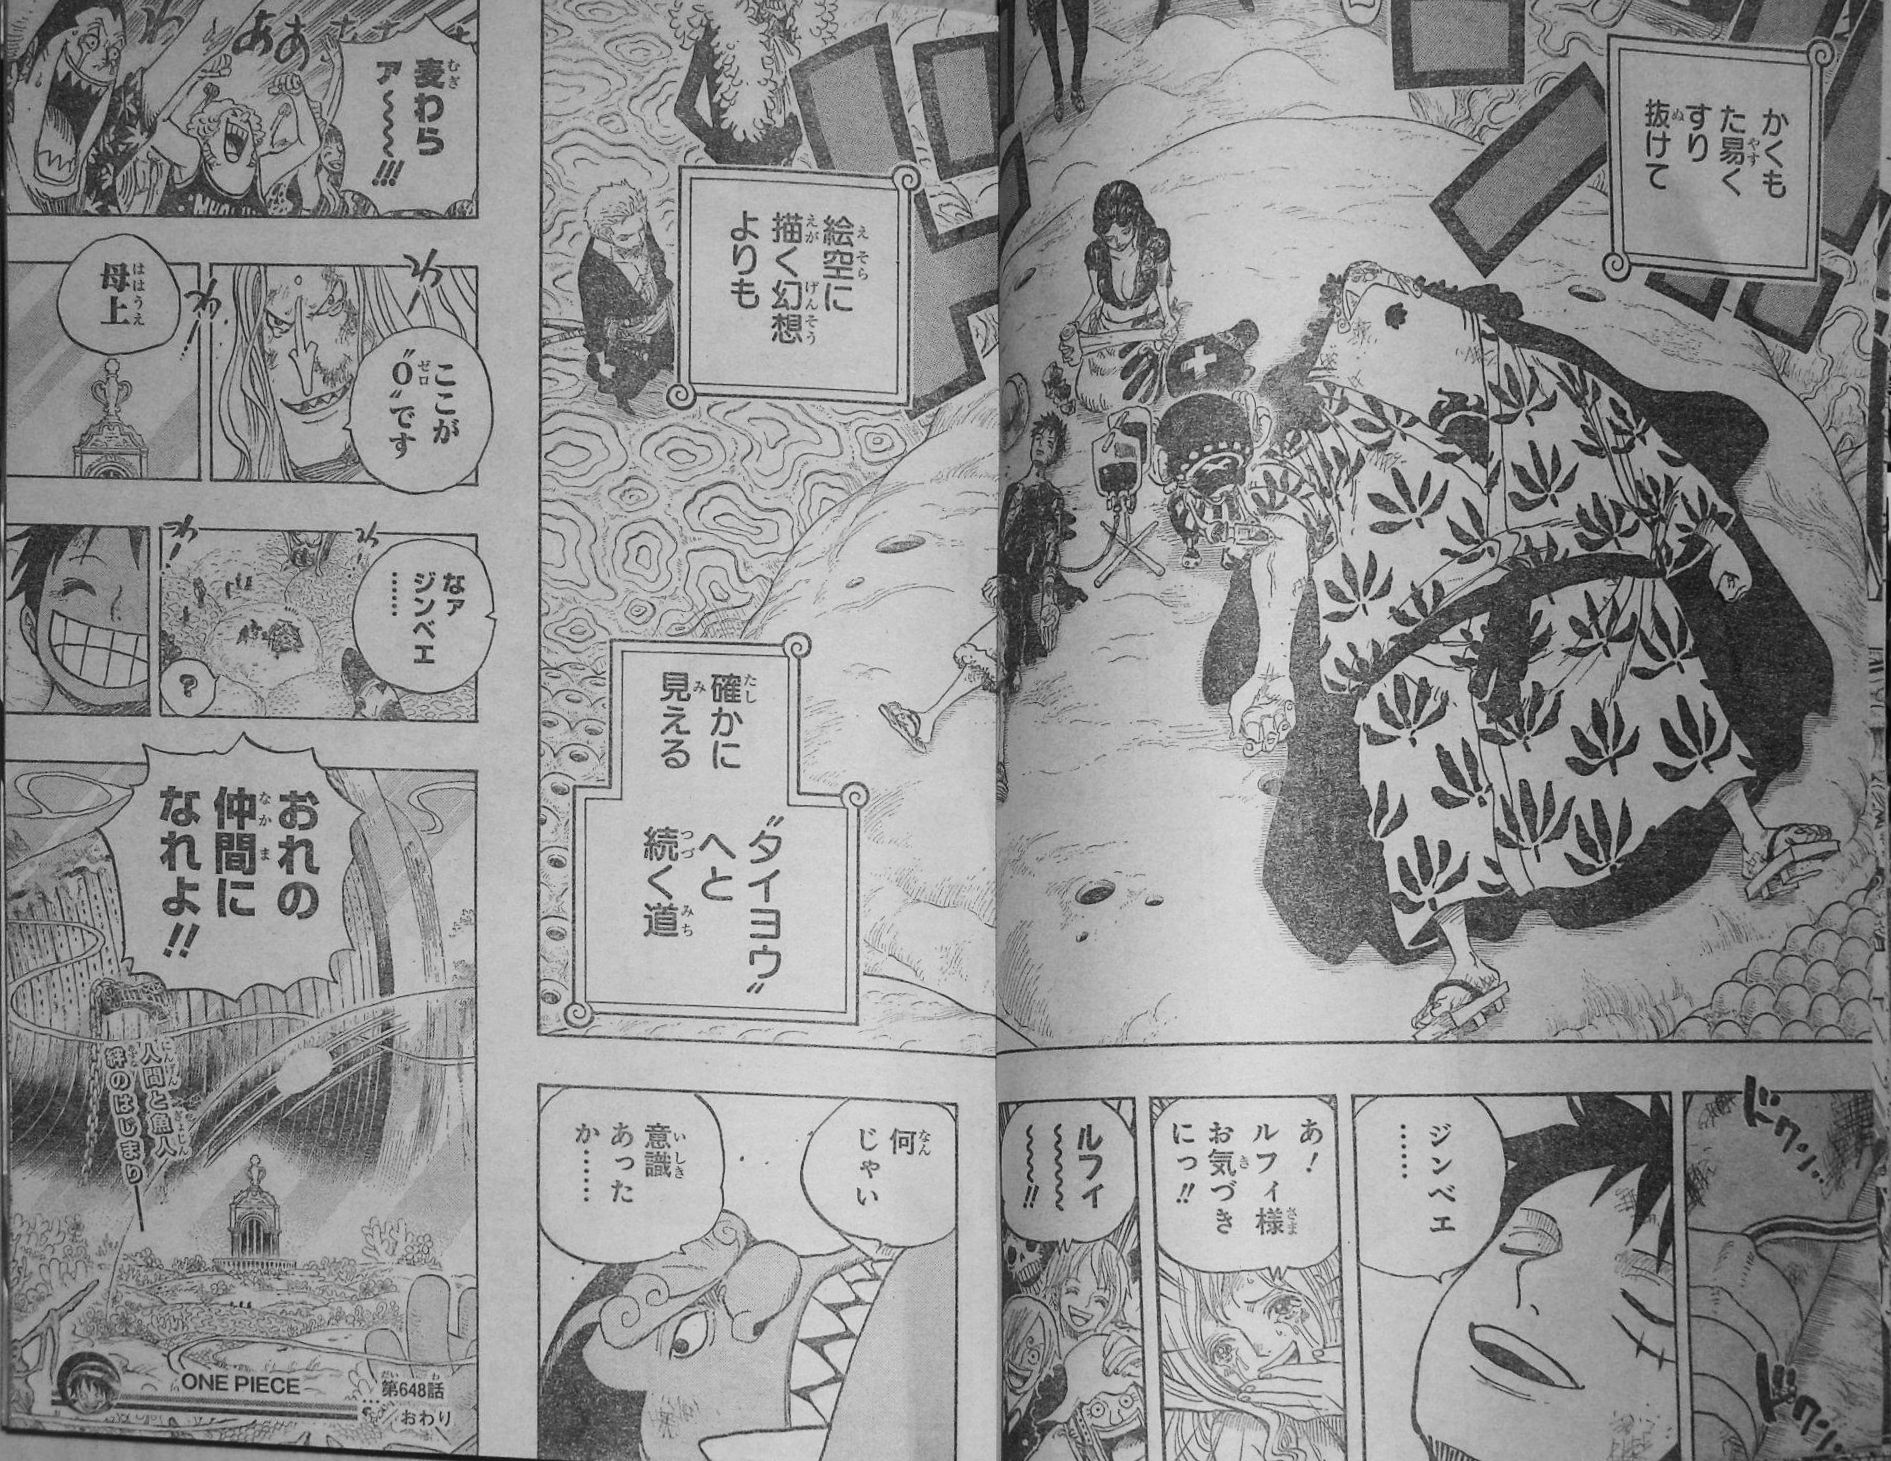 Wj 12年01号 One Piece 第648話 仲間になれよ 四十路ですがジャンプ読んでいます